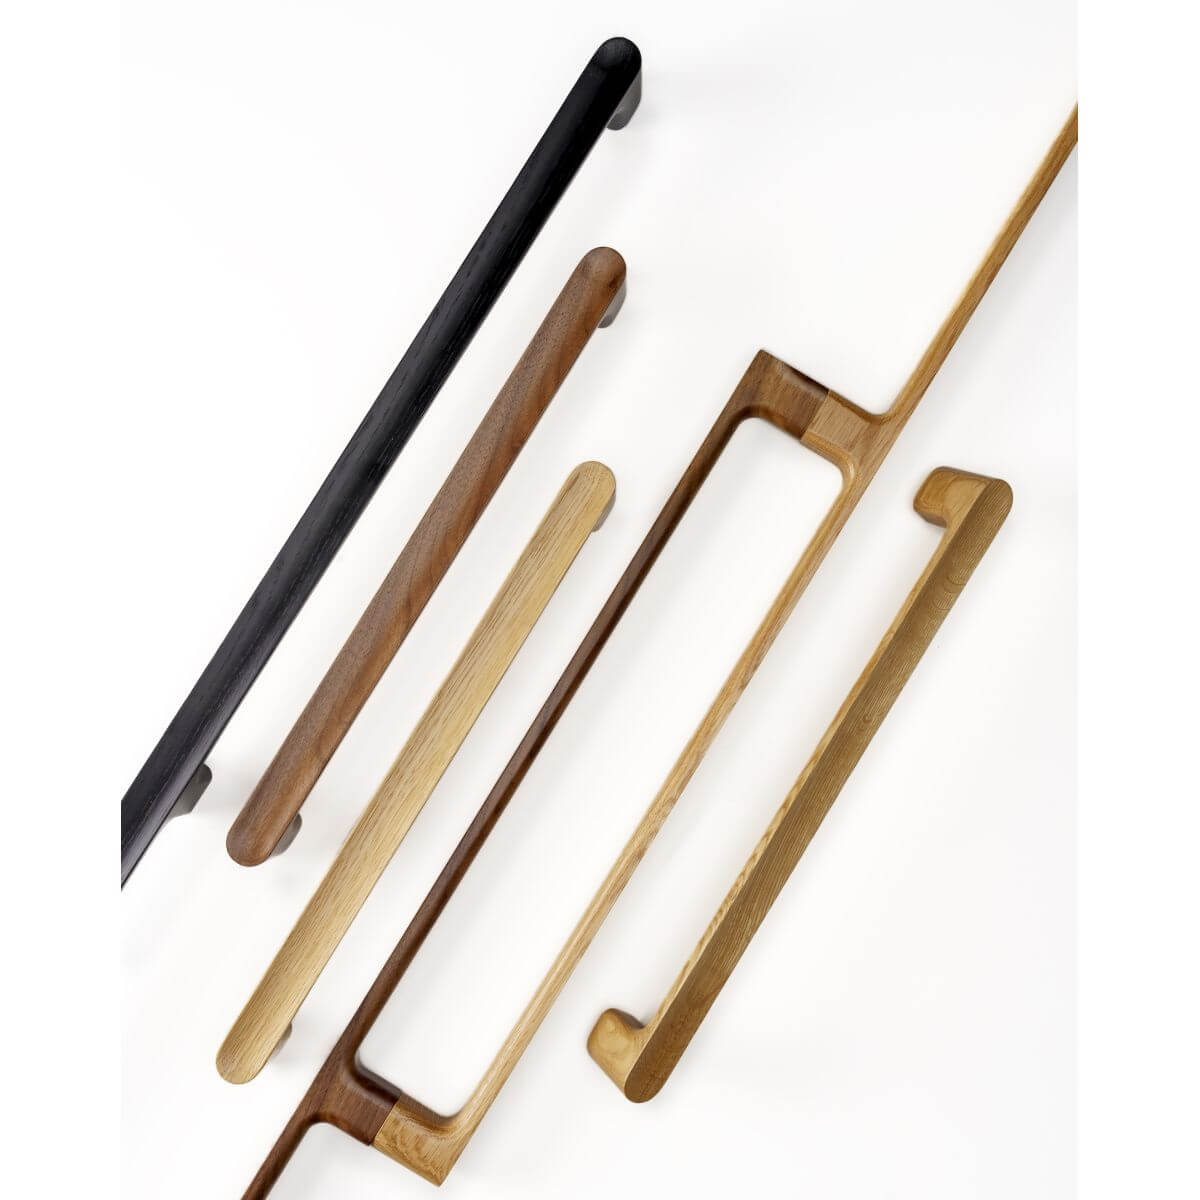 Tiradores de madera, una tendencia en auge / Wooden handles, a growing  fashion - Viefe handles